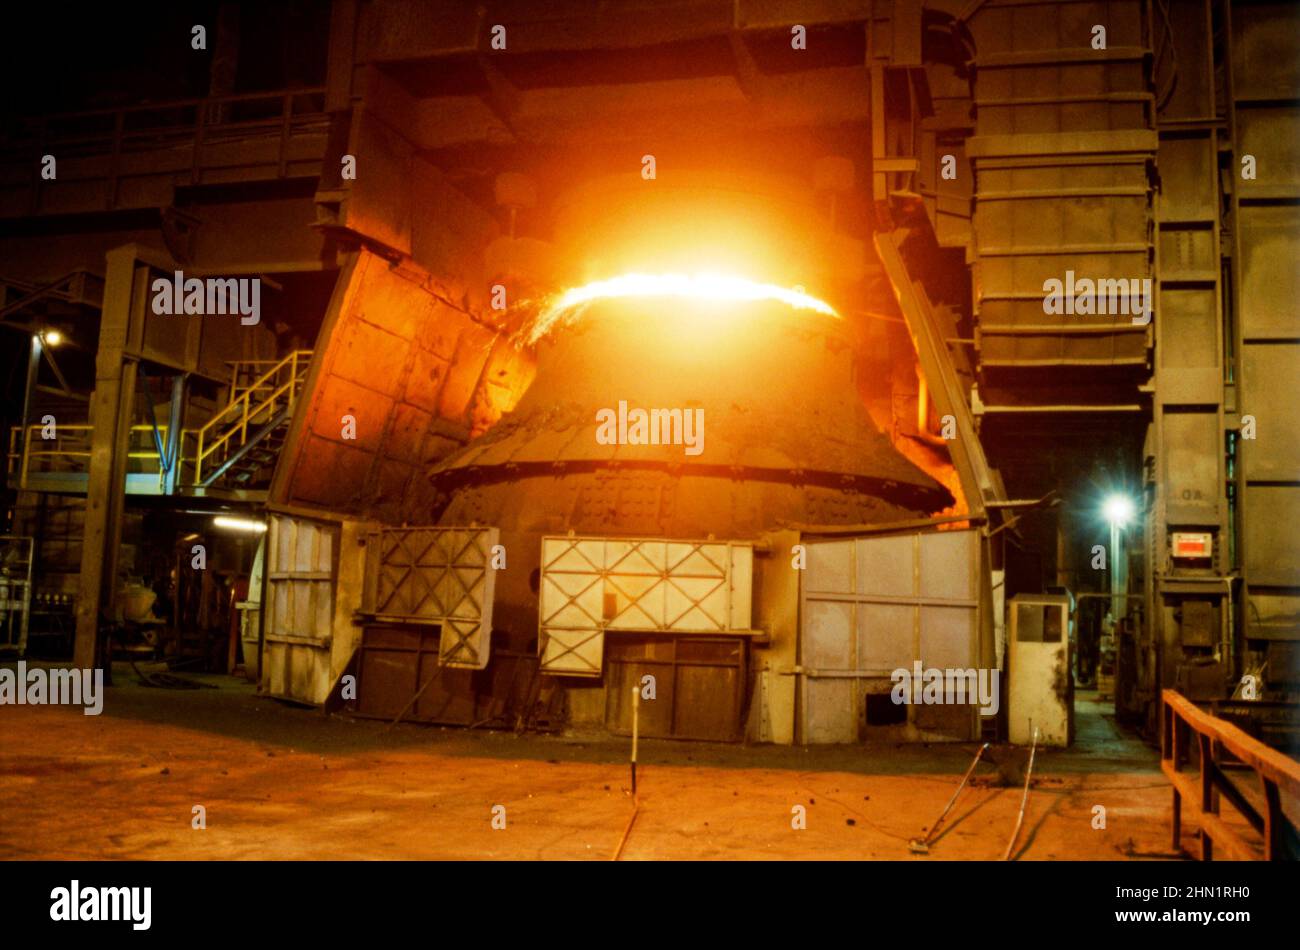 Ein Blick Mitte 1980s in das Stahlwerk von Port Talbot, einem integrierten Stahlproduktionswerk in Port Talbot, West Glamorgan, Wales, Großbritannien. Hier wird einer der riesigen Öfen mit Kohle betrieben. Dieses Bild stammt aus einer Vintage-Farbtransparenz, die von einem Gastfotografen aufgenommen wurde – einem Vintage-Foto aus dem Jahr 1980s. Stockfoto